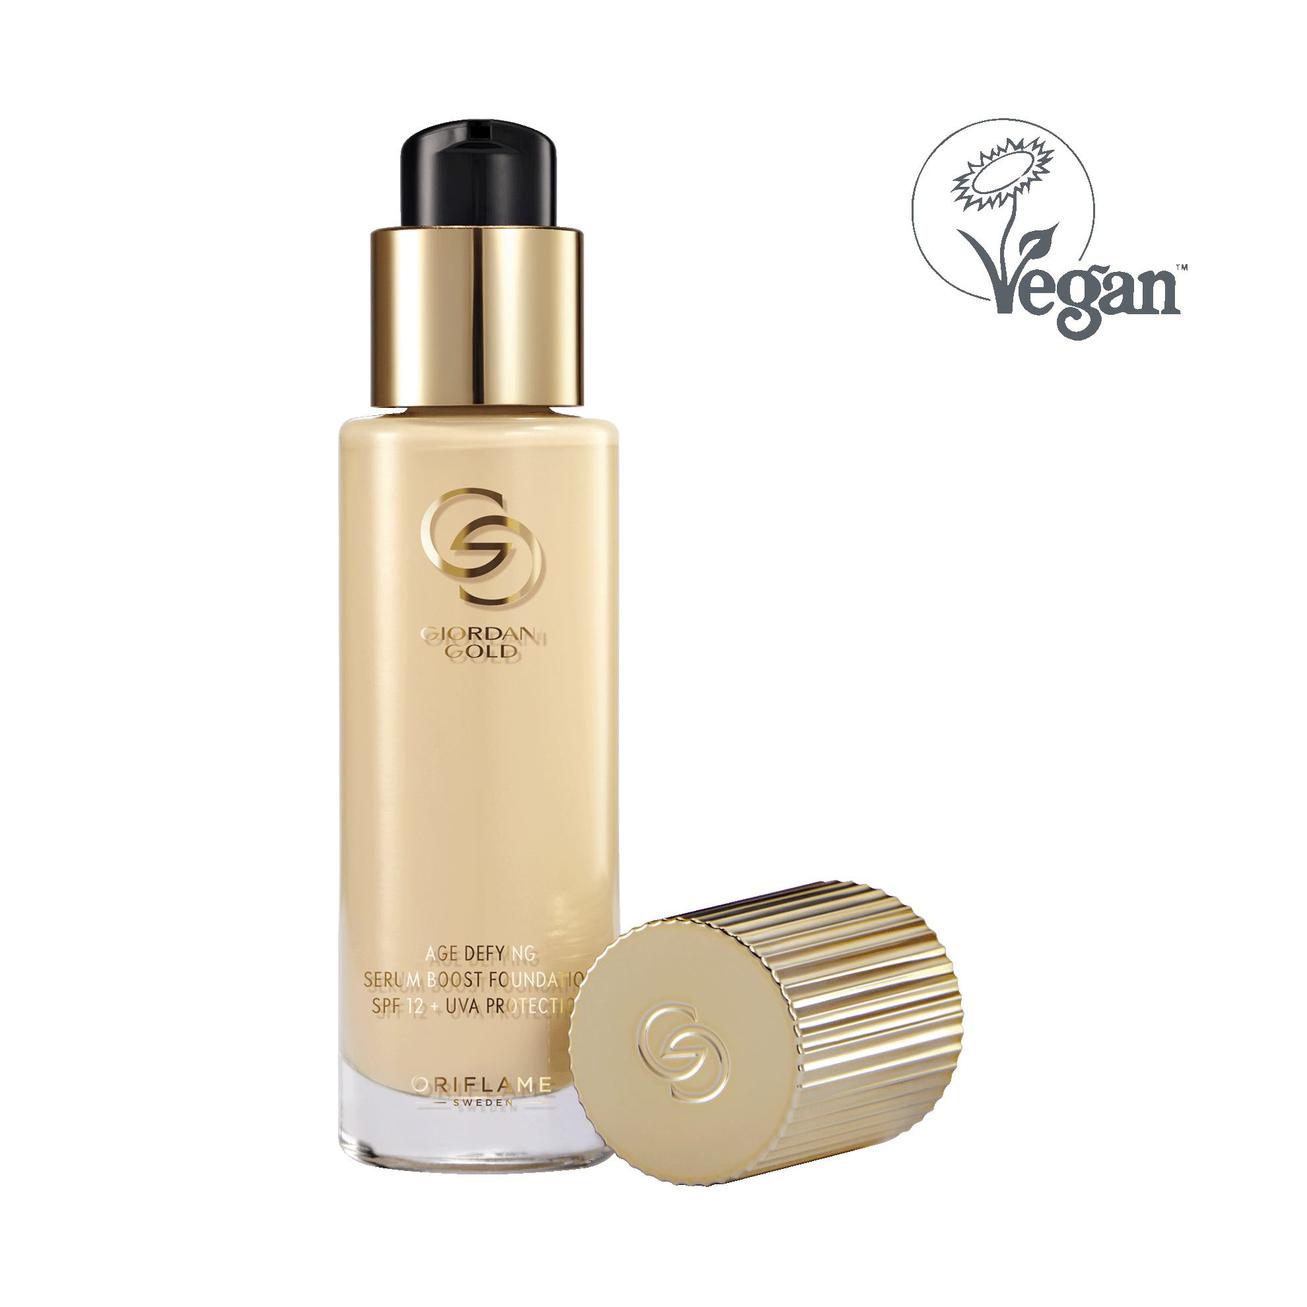 Oferta de Maquillaje Antienvejecimiento Serum Boost SPF 12 + Protección UVA Giordani Gold por 36€ en Oriflame